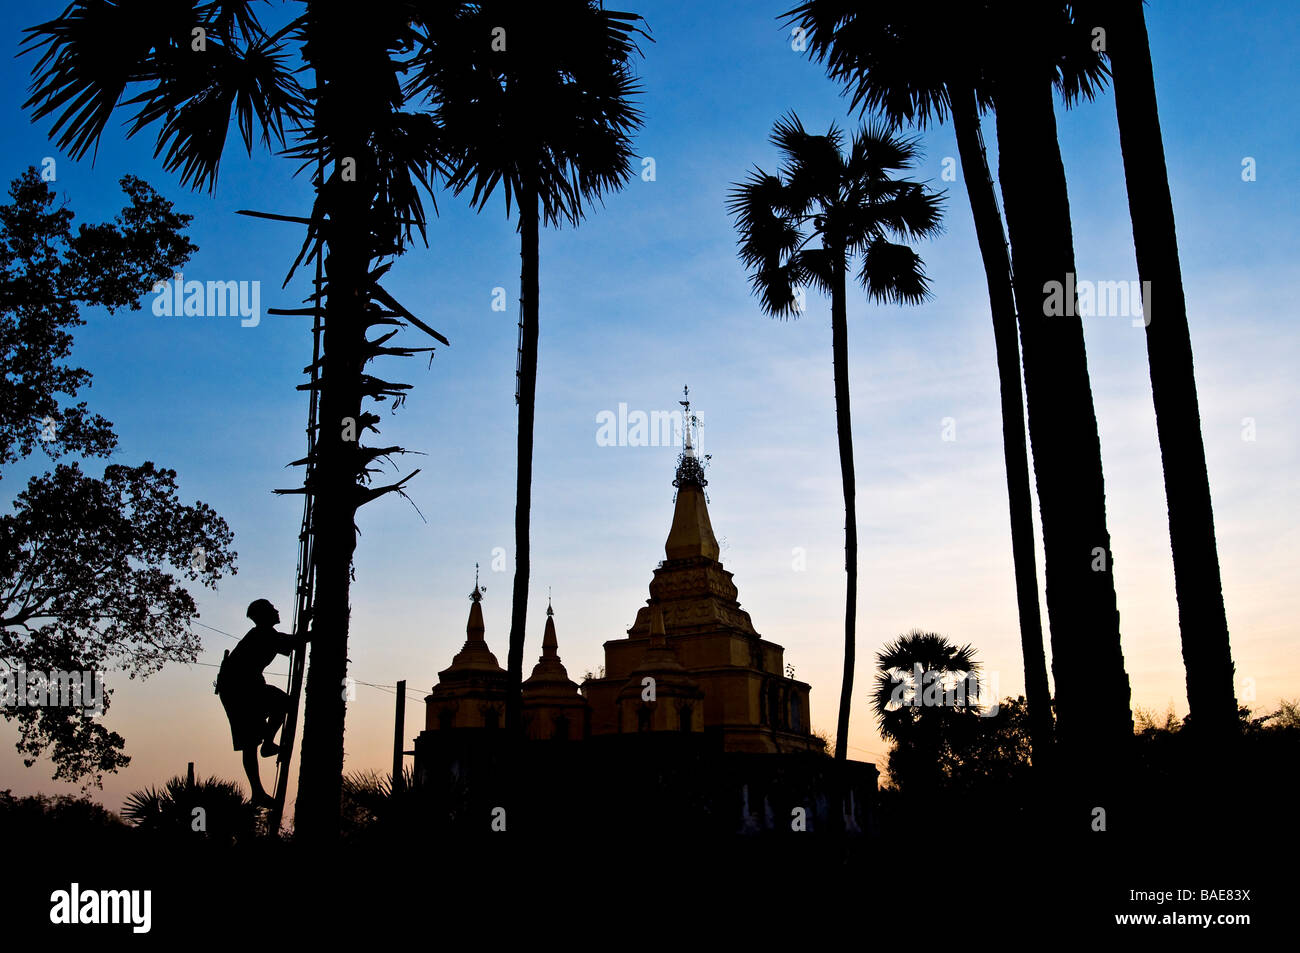 Myanmar (Birmanie), Division de Yangon, Bago, village de Paya Thuin Zu, site des trois pagodes, Nyoaye va au haut d'un palm Banque D'Images